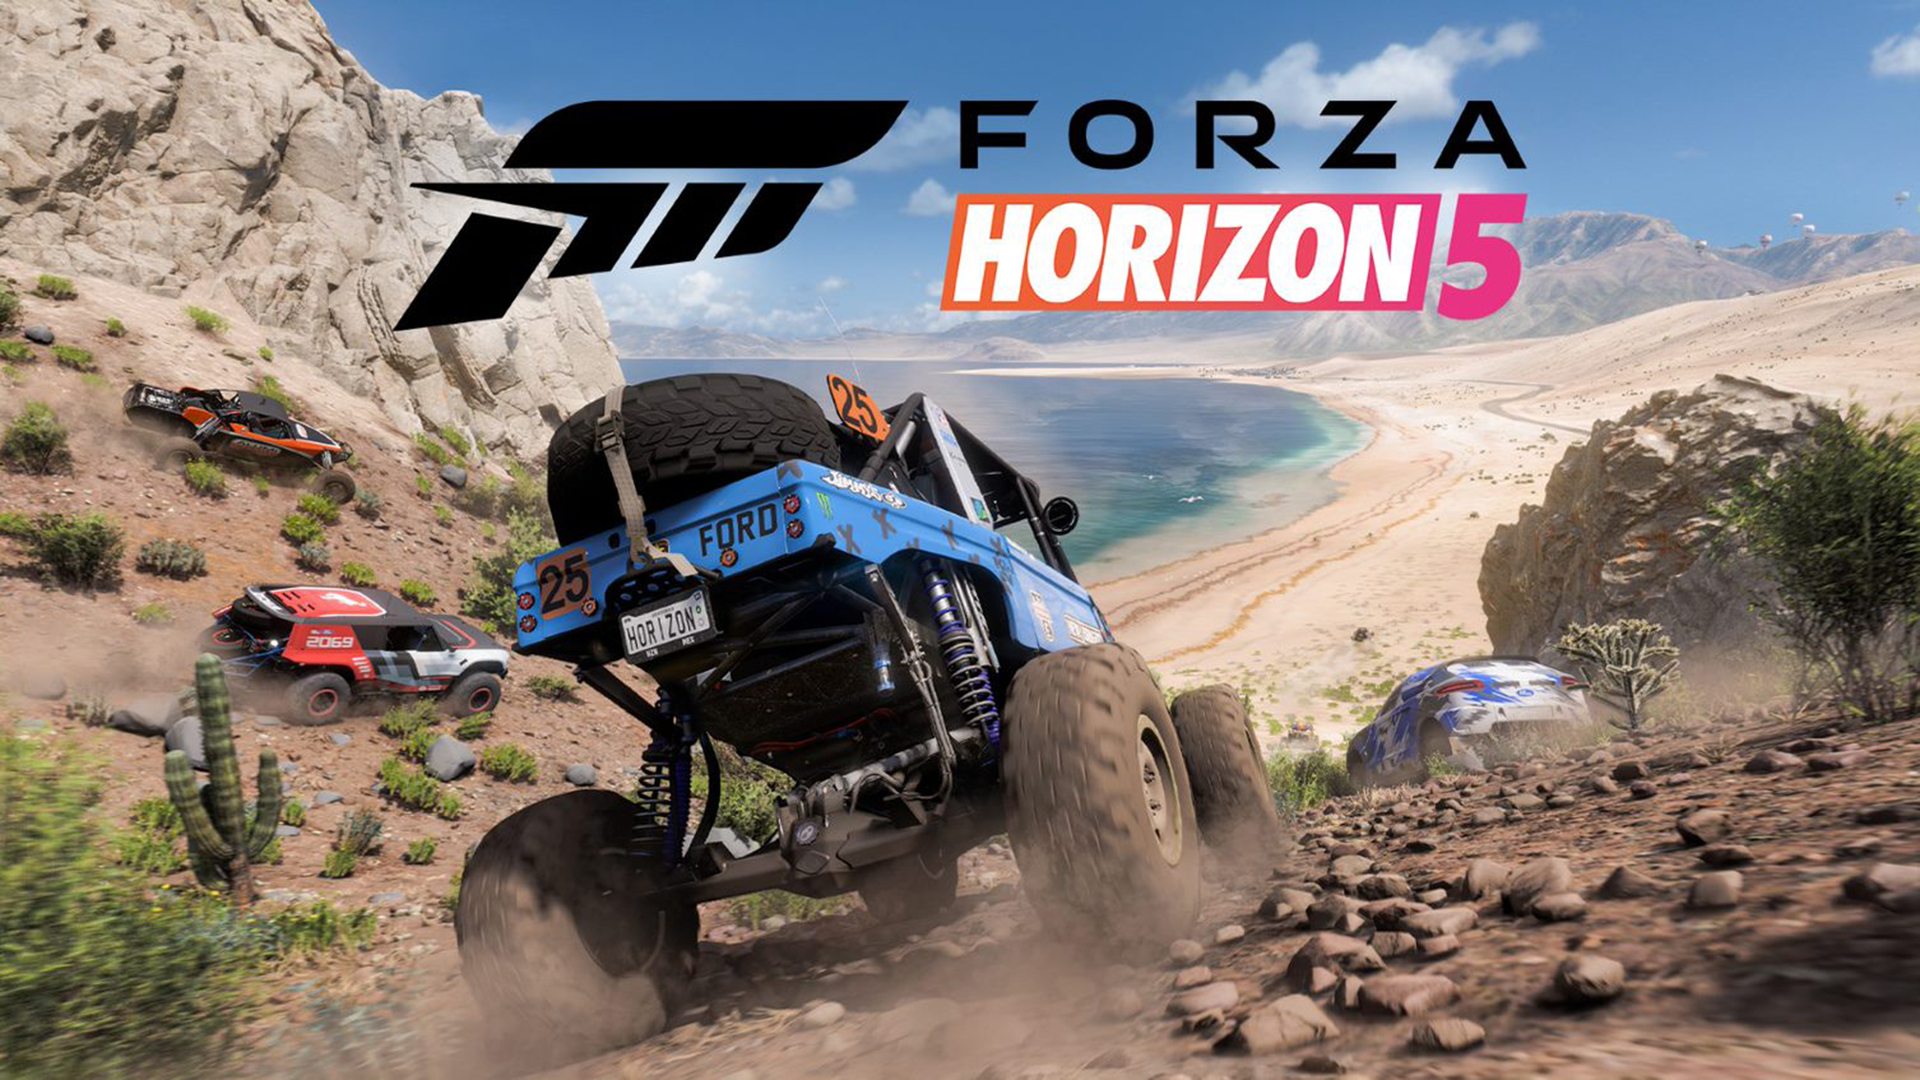 Forza Horizon 5: Rase durch Mexiko und erkunde unsere größte und bunteste Open-World aller Zeiten HERO